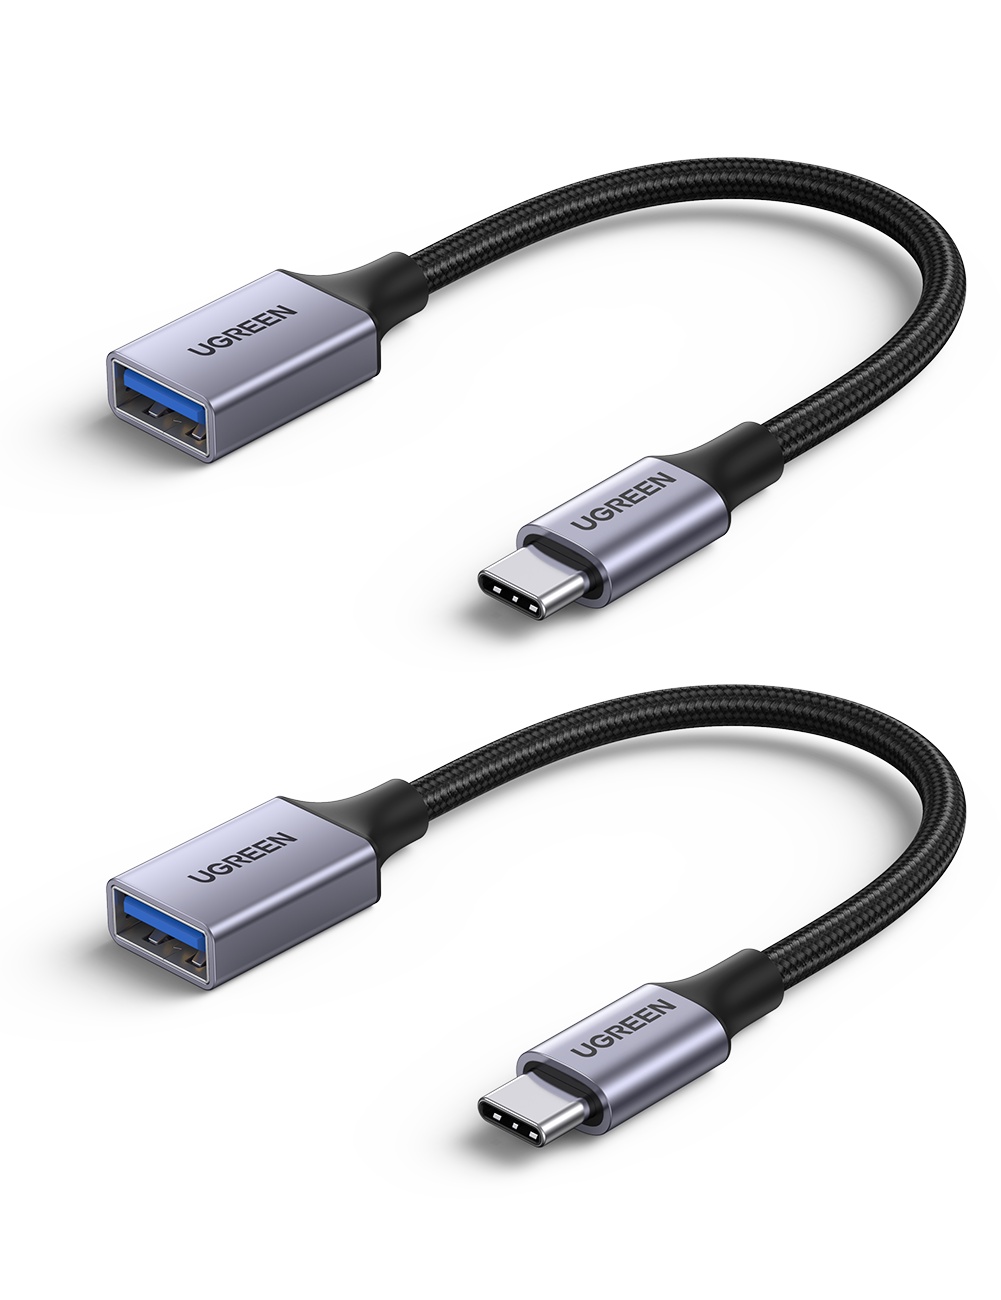 รายละเอียดเพิ่มเติมเกี่ยวกับ UGREEN สายแปลง OTG จาก USB C เป็น USB 3.0 สำหรับ Macbook Pro Air iPad Pro 2020, Dell XPS